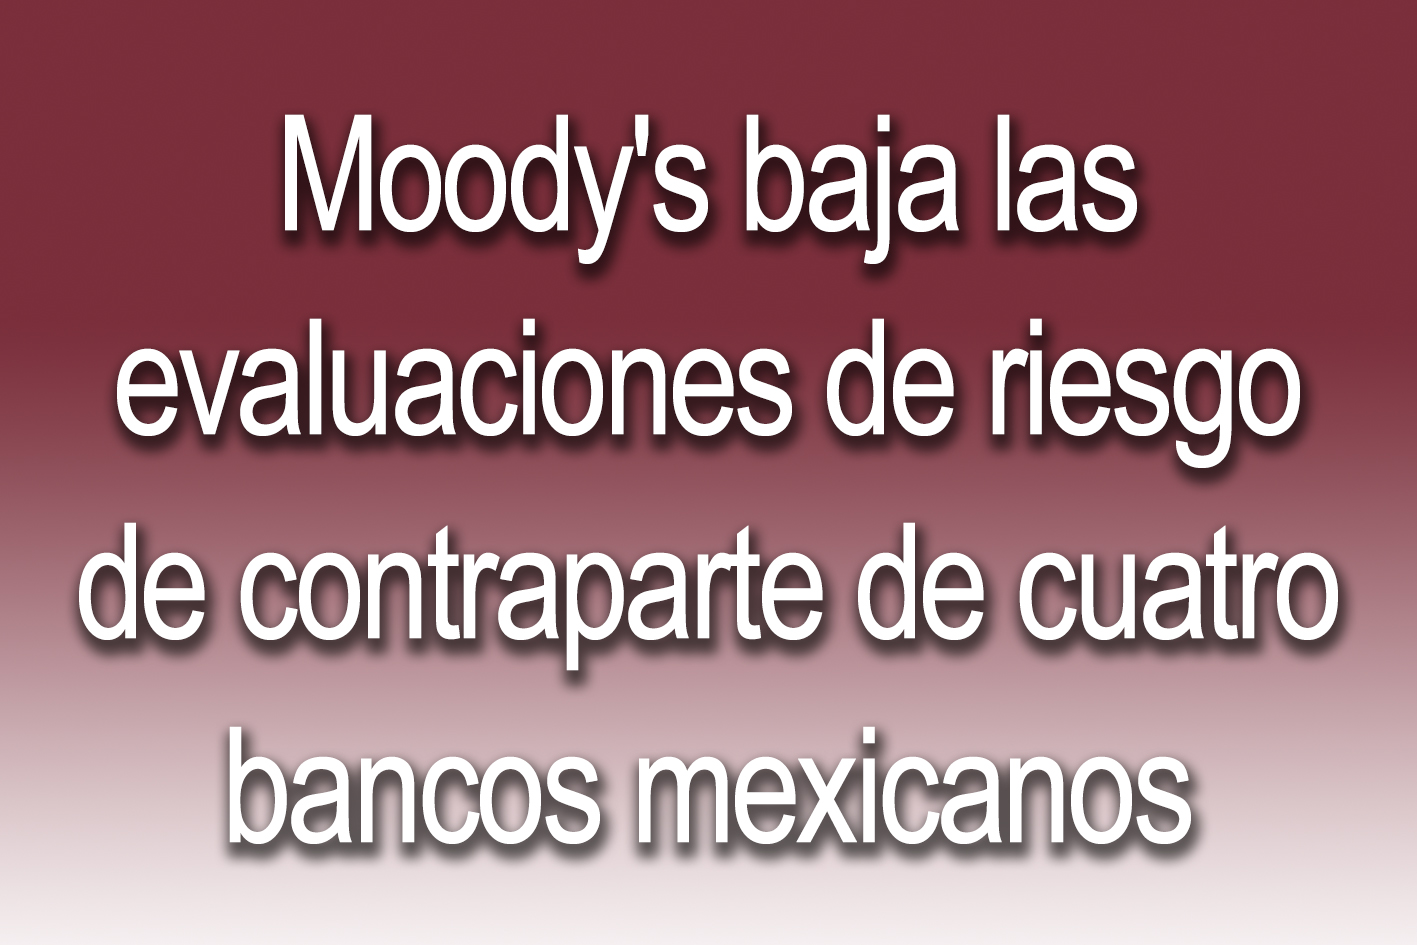 Photo of Moody's baja las evaluaciones de riesgo de contraparte de cuatro bancos mexicanos